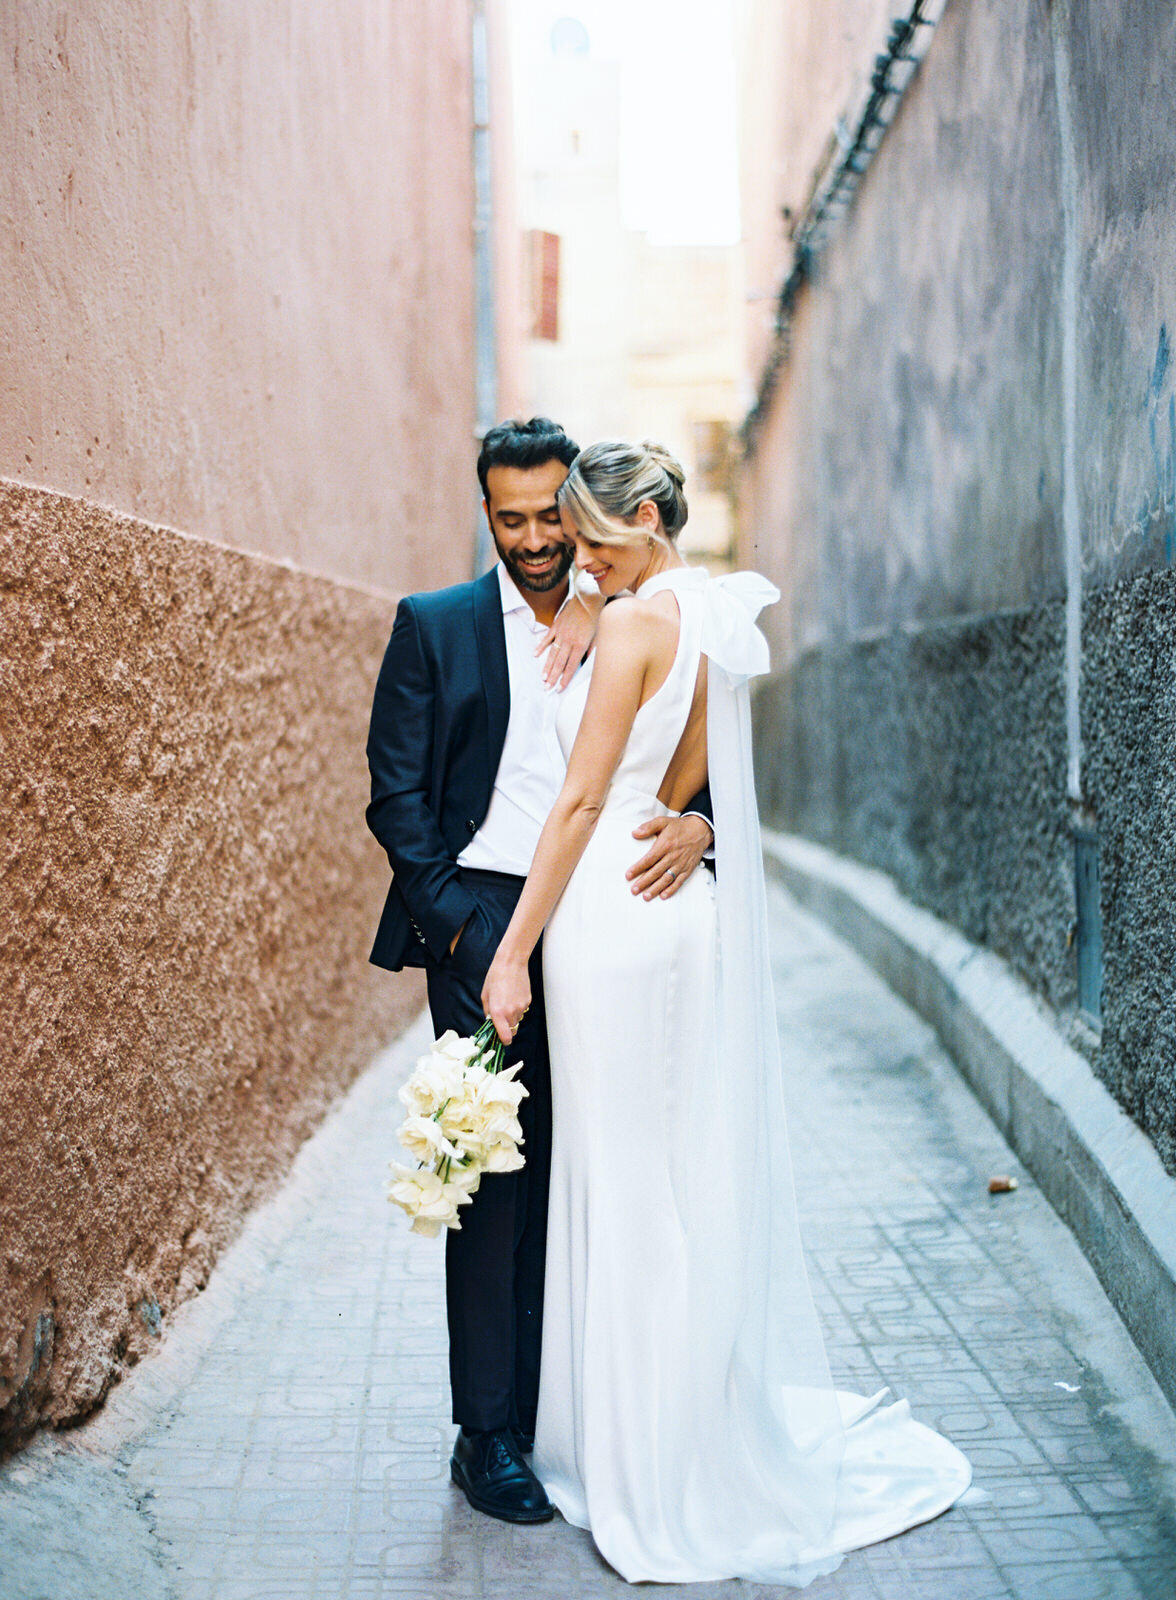 Stylish Modern Wedding Editorial in Marrakech22